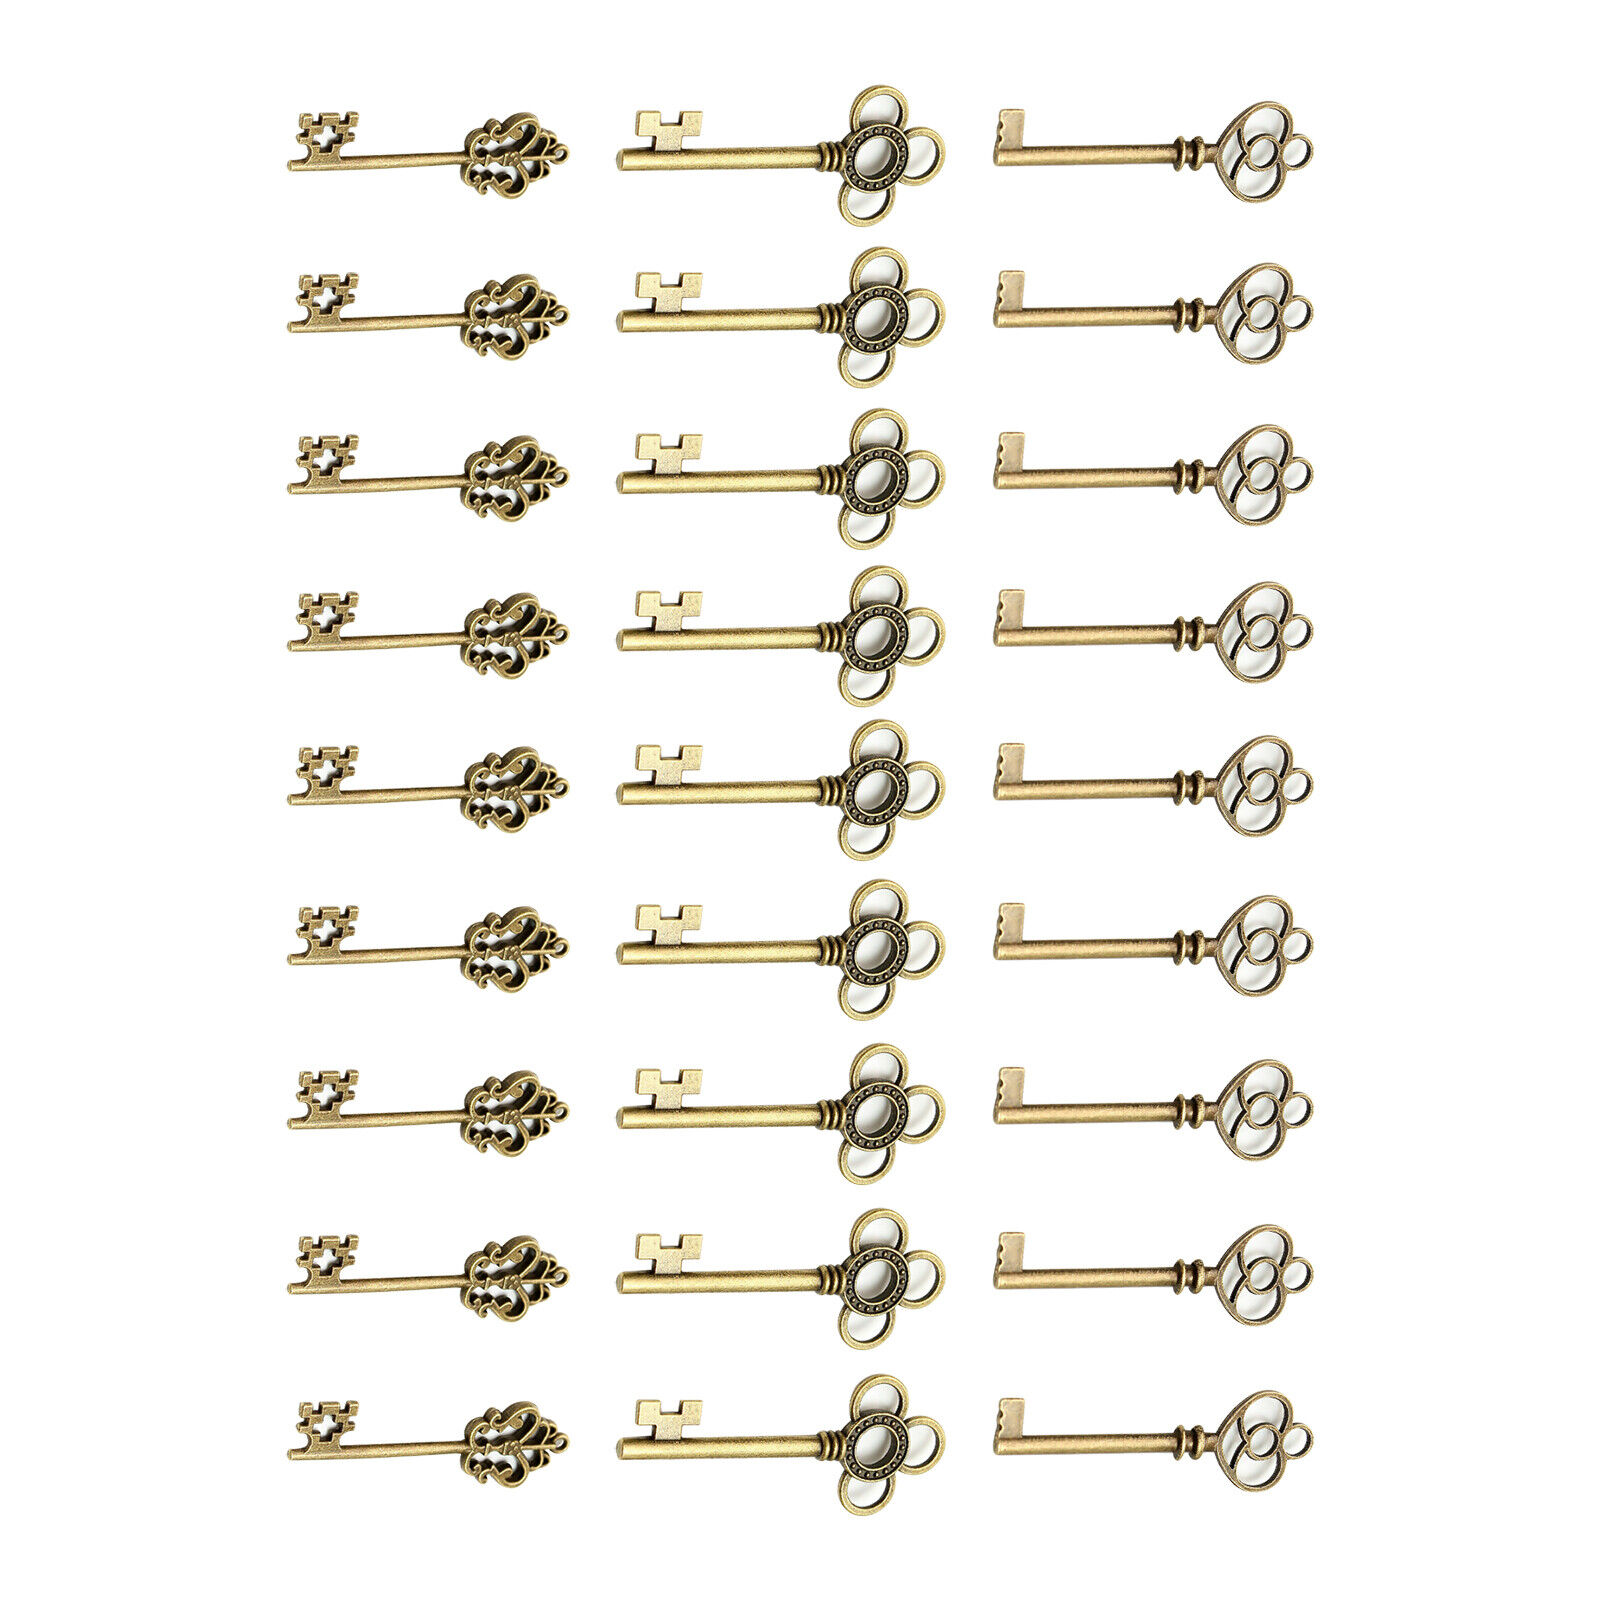 30PCS Antique Vintage Old Look Bronze Skeleton Keys Pendant keychains DIY craft